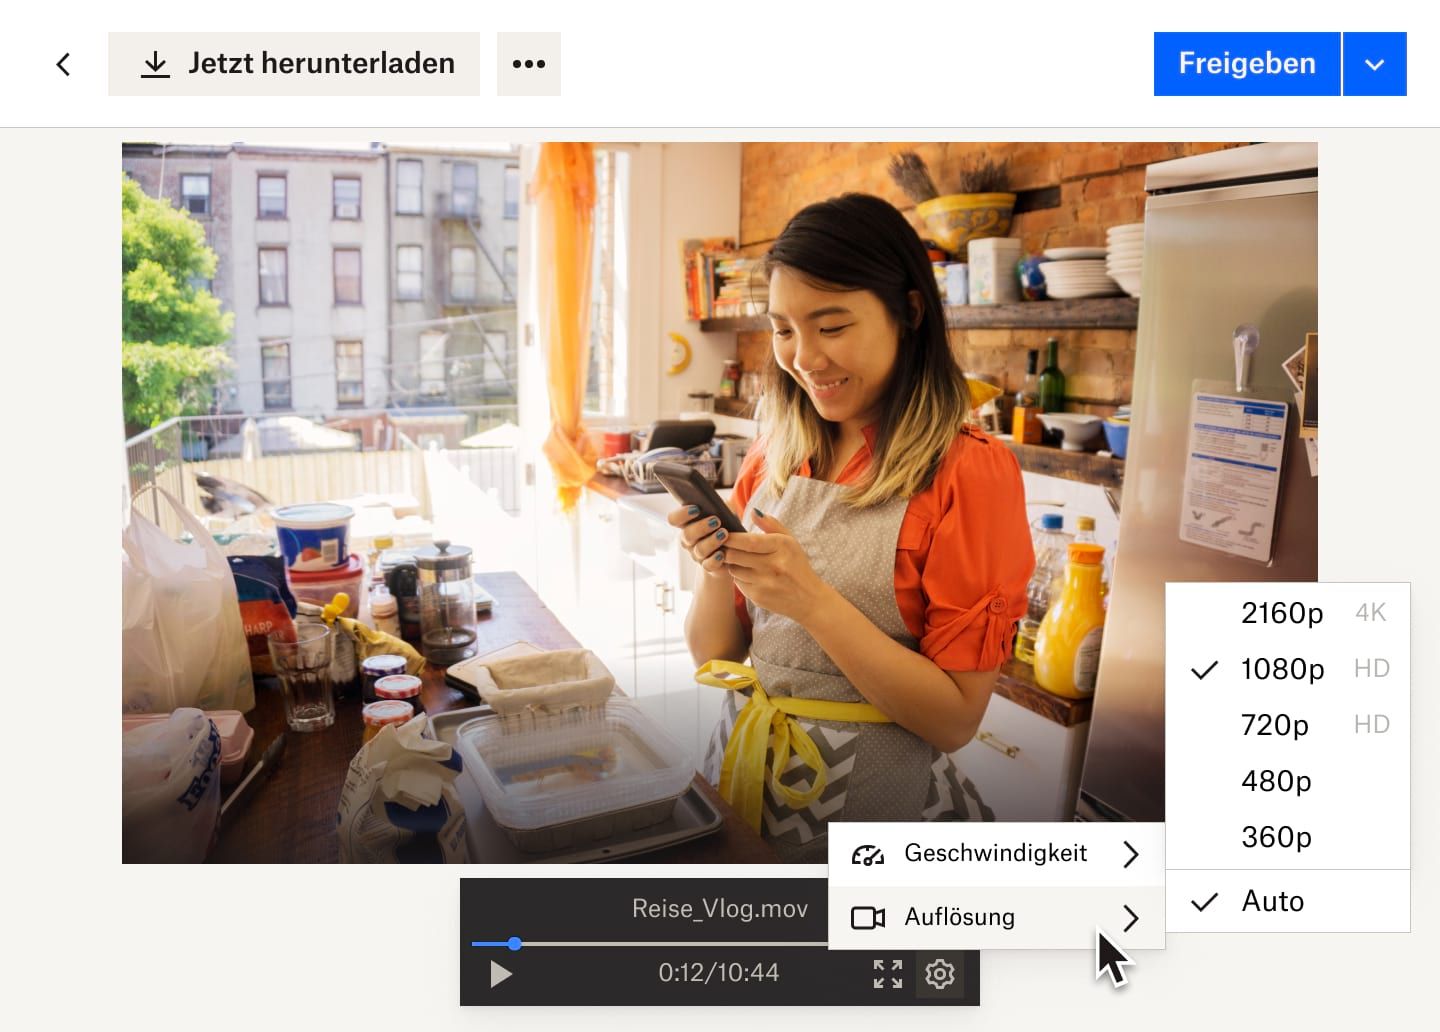 Ein Drop-down aus der Schaltfläche „Einstellungen“ zeigt die Optionen für die Videogeschwindigkeit und -qualität der Dropbox-Videodatei. Das Video zeigt eine Frau, die in einer Bäckerei arbeitet.